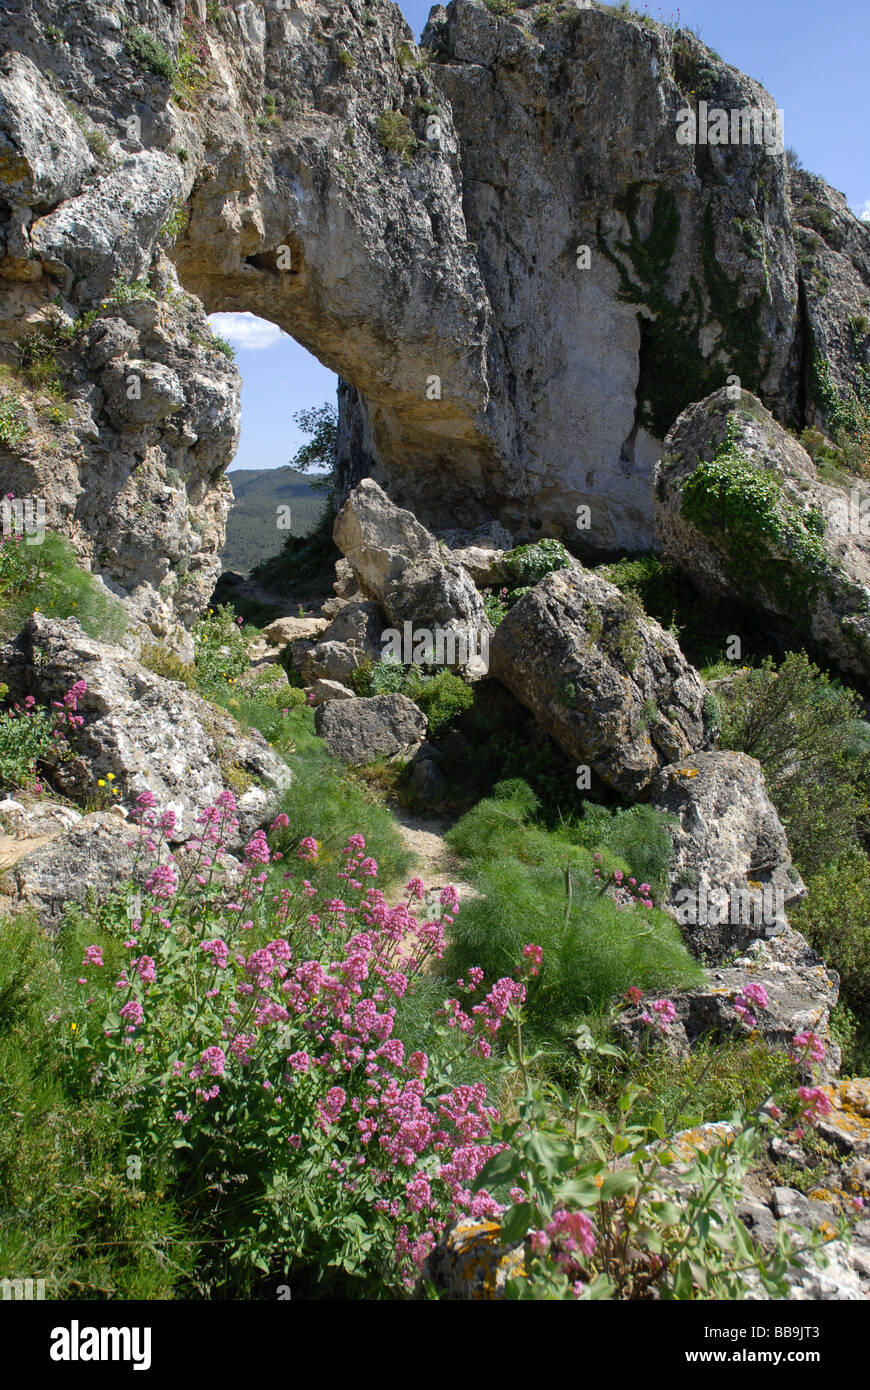 La Forada Rock Arch, Sierra de La Forada, Vall de Alcala, Alicante Province, Comunidad Valenciana, Spain Stock Photo